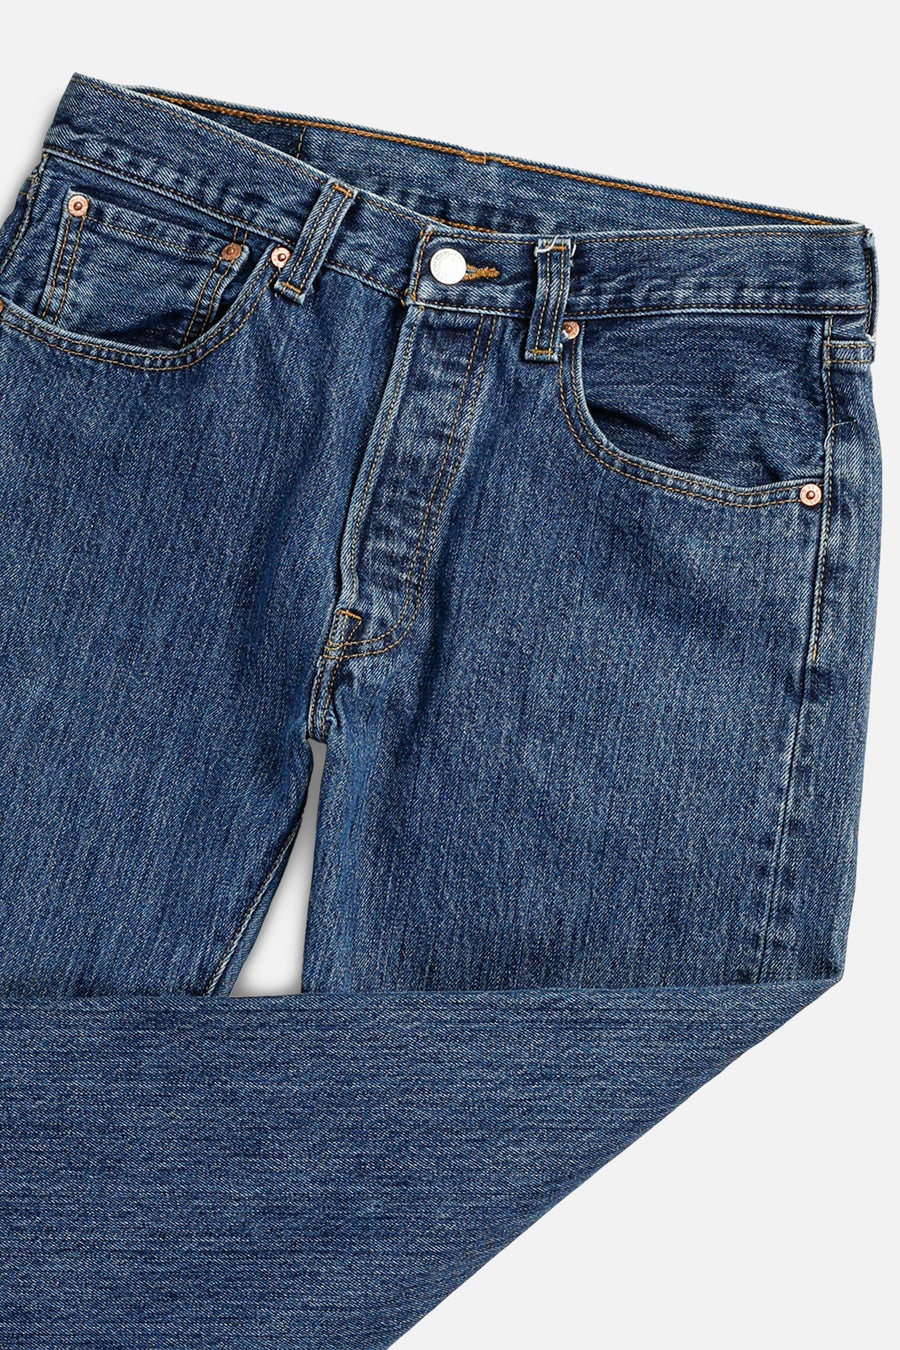 Vintage Levi's Denim Pants - W31 L32